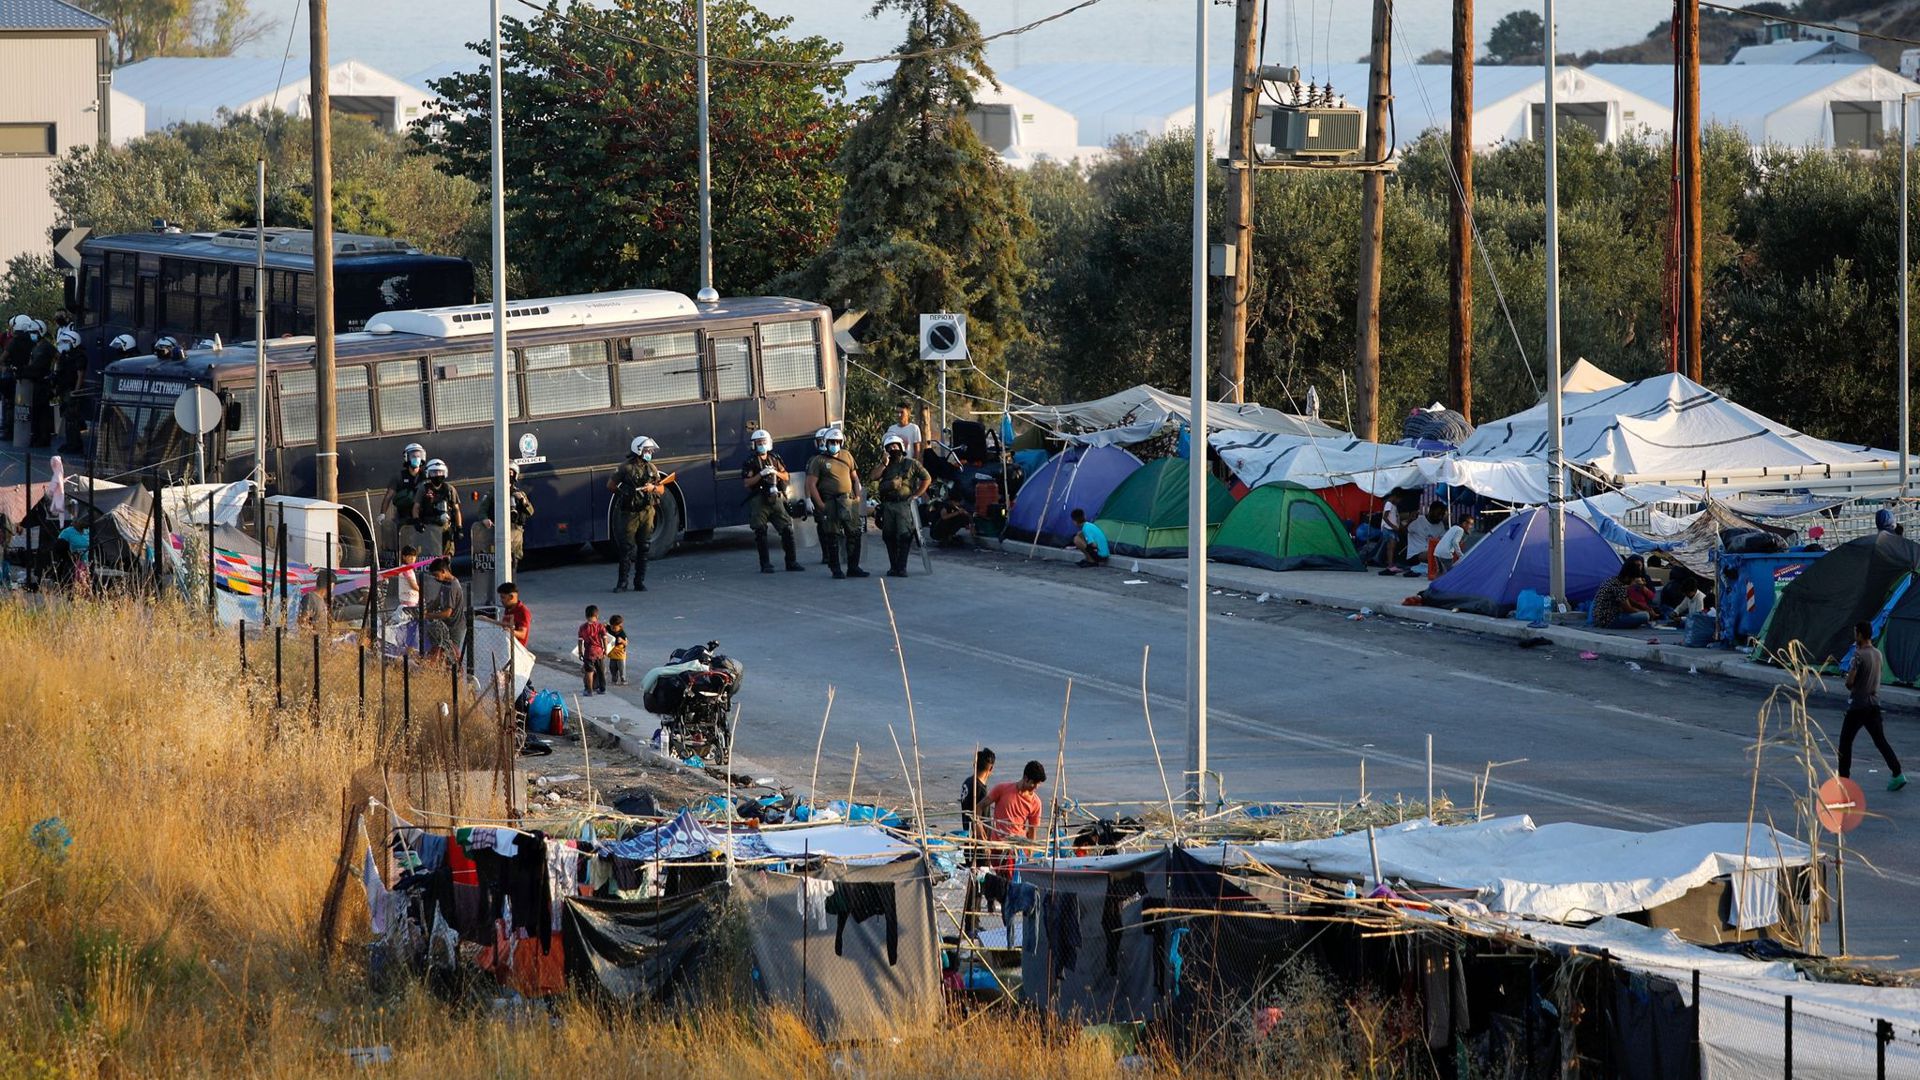 Viele Migranten aus dem abgebrannten Flüchtlingslager Moria zelten auf der Straße.